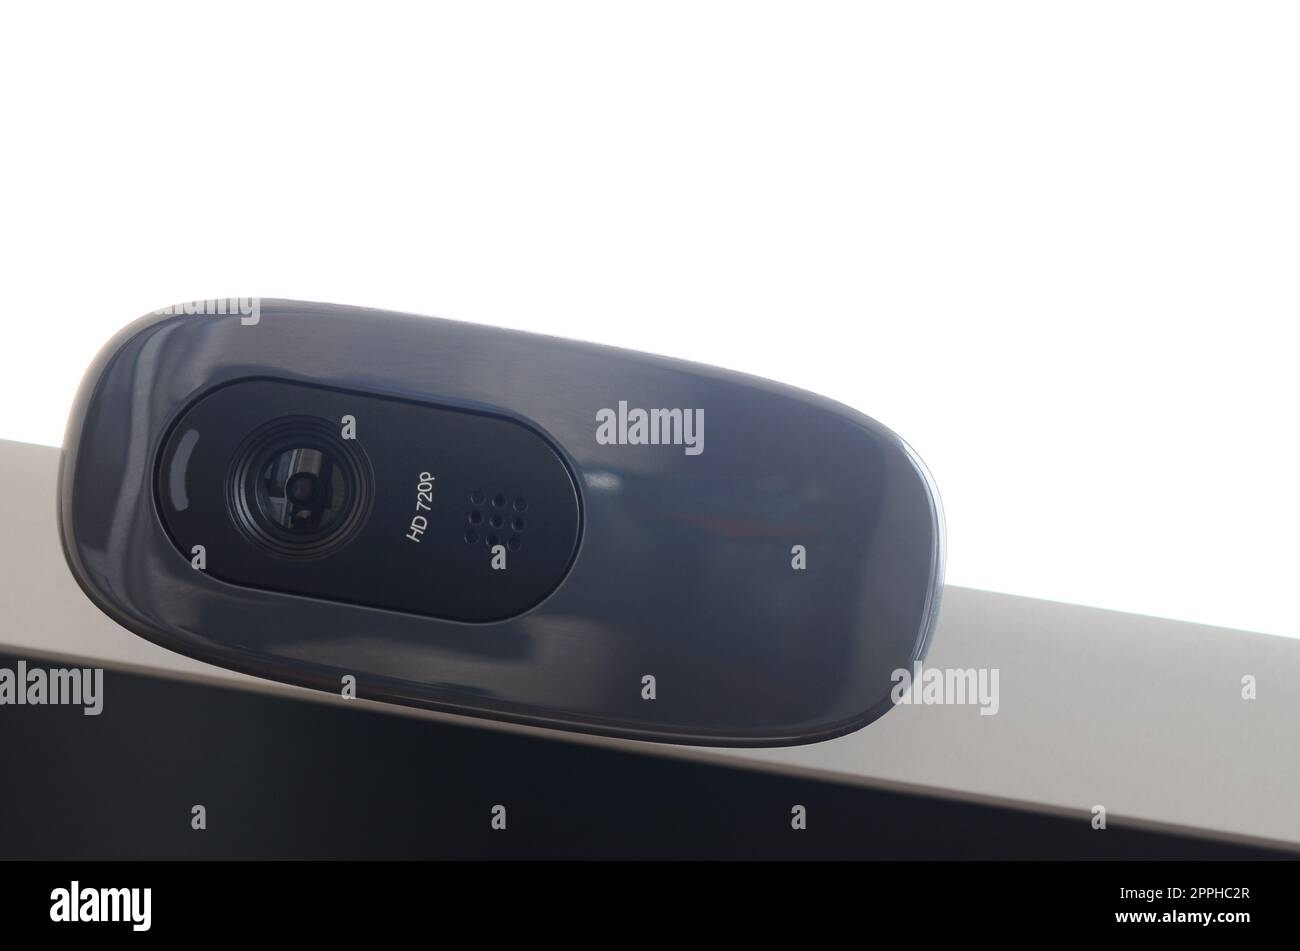 Une webcam moderne est installée sur le boîtier d'un moniteur à écran plat. Périphérique de communication vidéo et d'enregistrement vidéo de haute qualité Banque D'Images